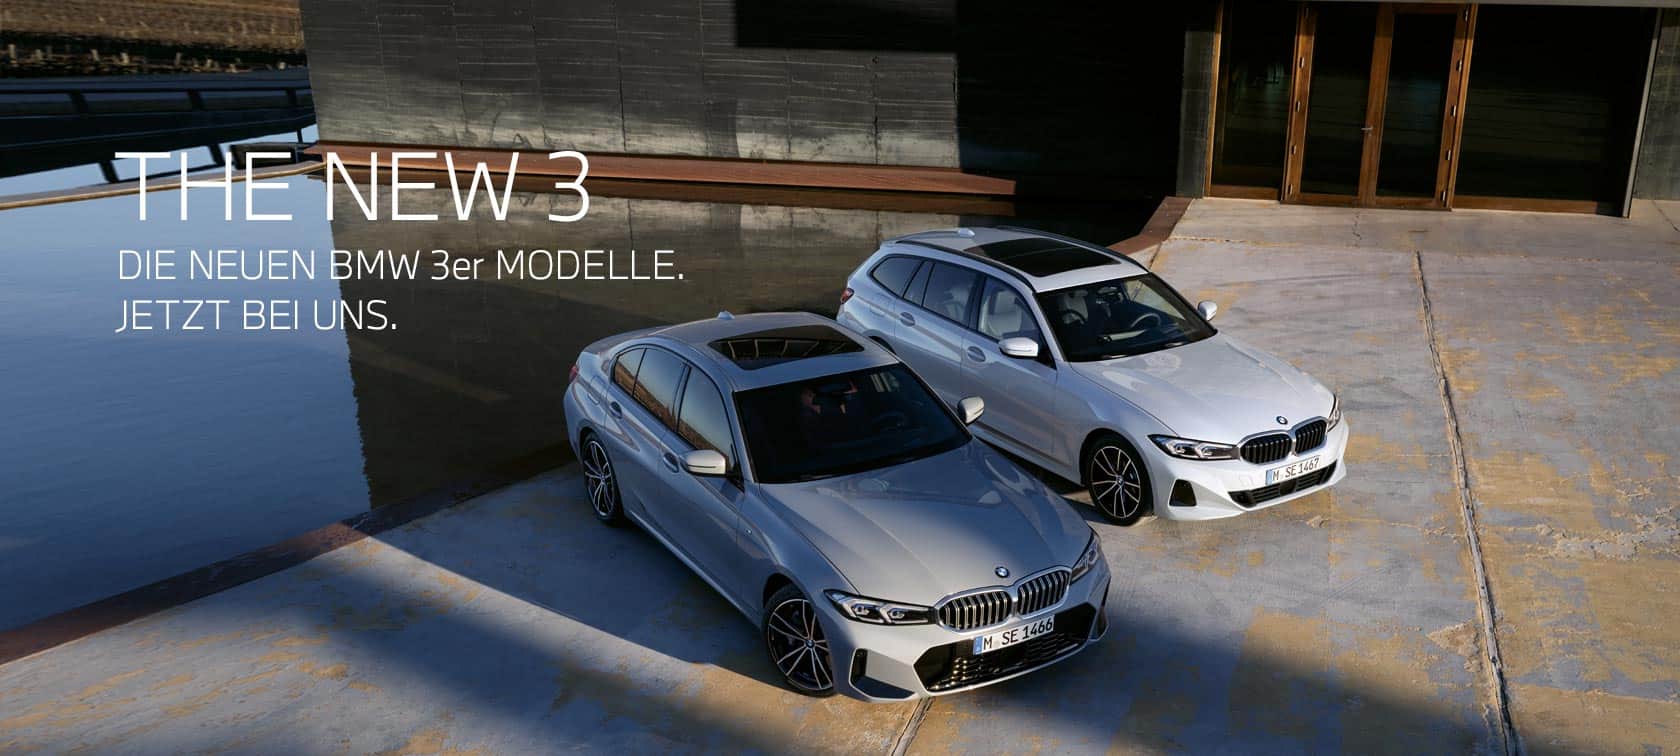 Die neuen BMW 3er Modelle